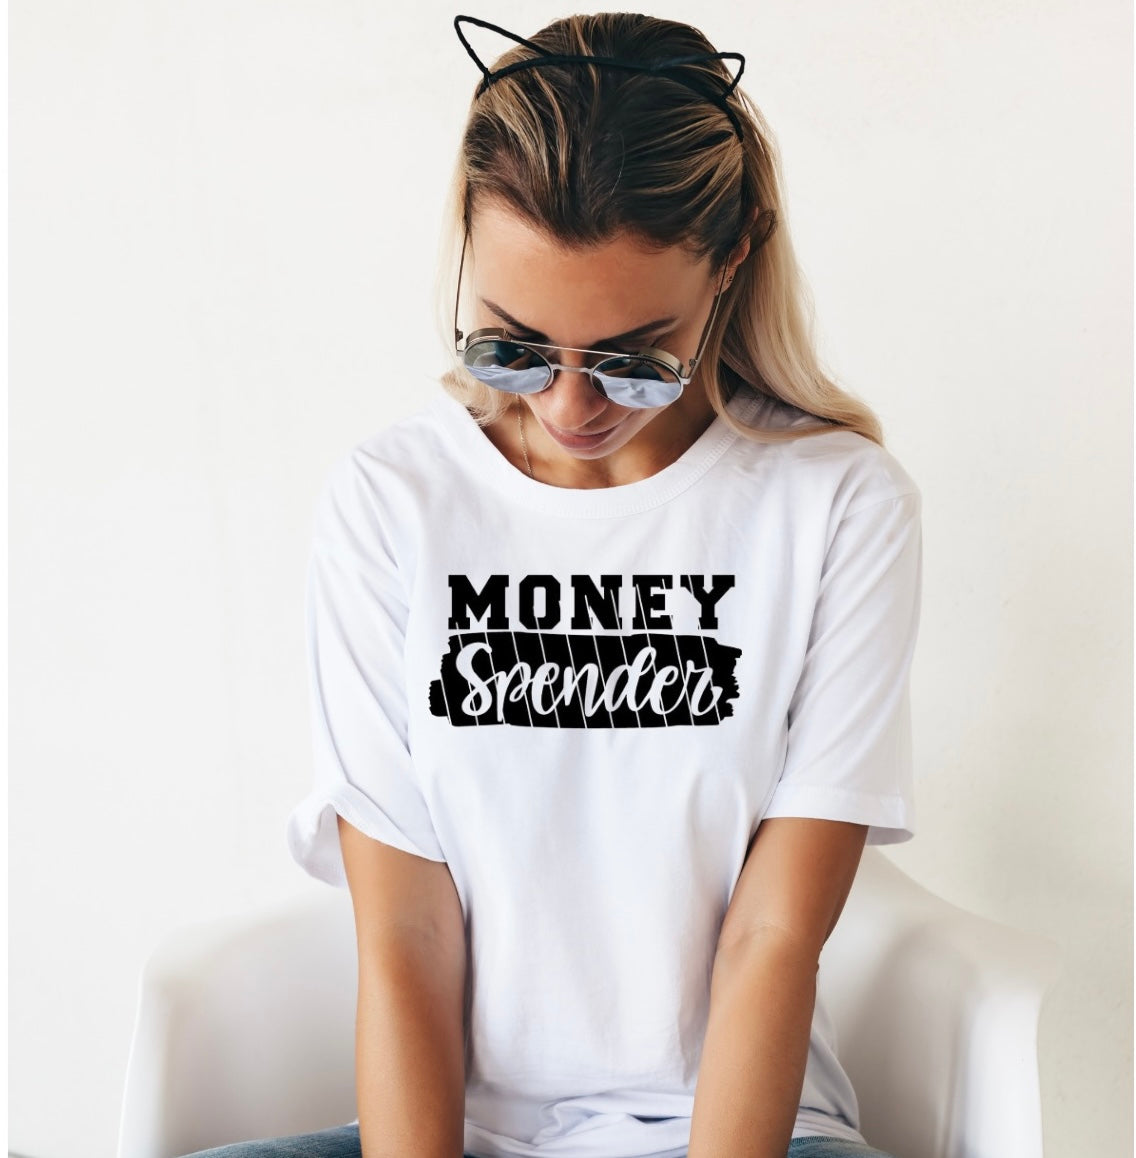 Money Spender